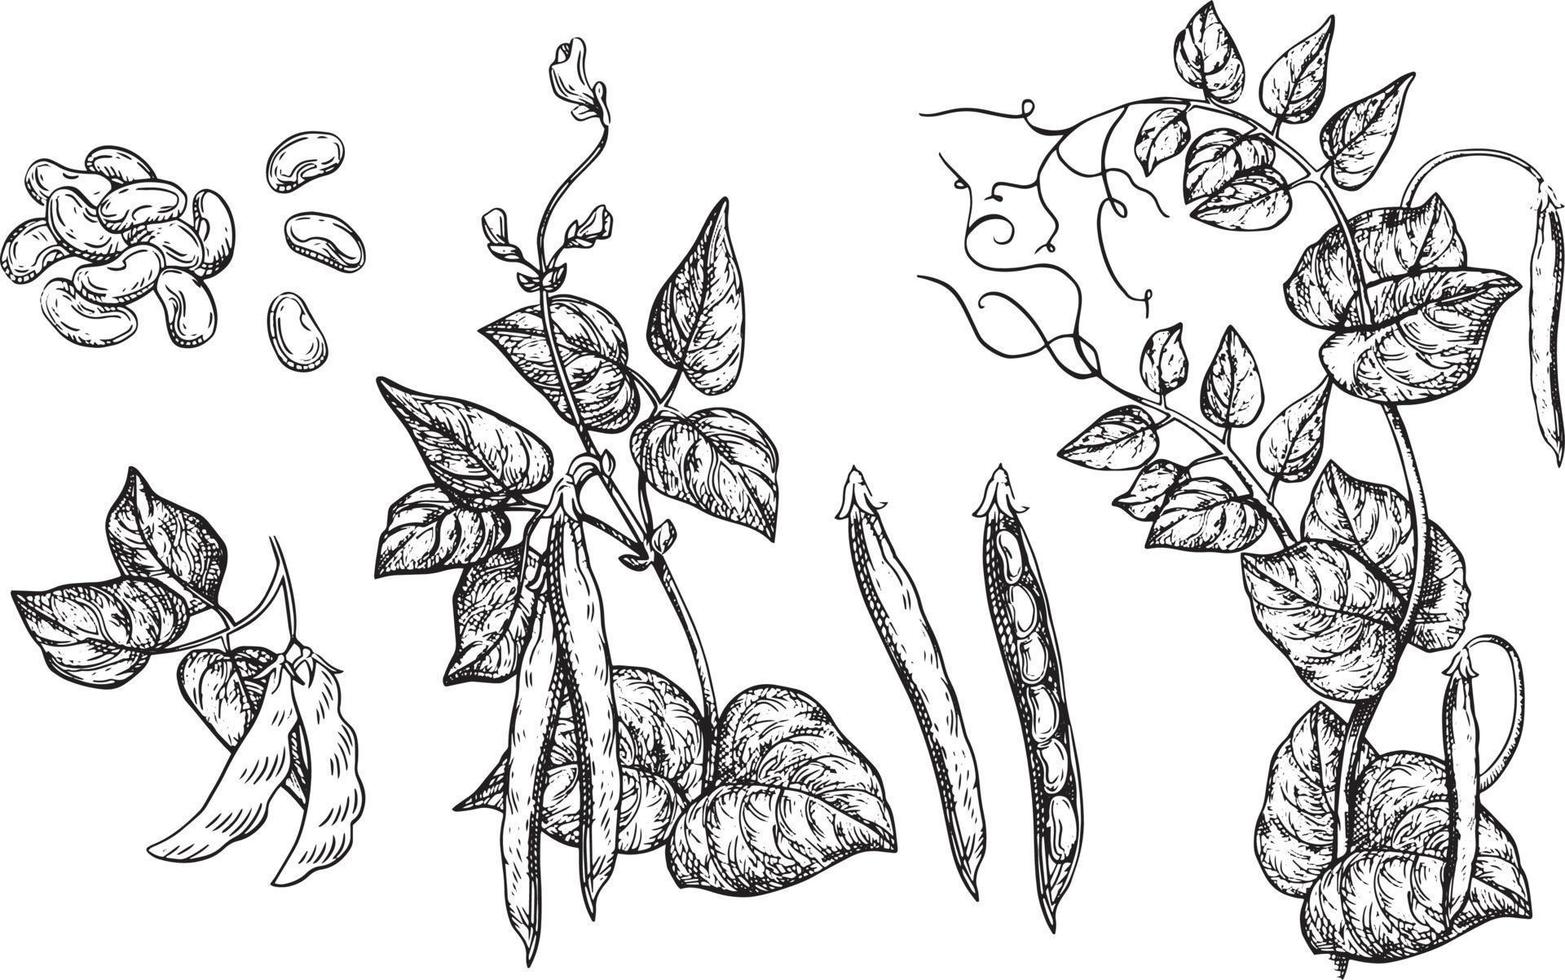 illustration vectorielle grappe de raisins de cuve avec feuille - symbole, élément de conception de colis, motif ornemental abstrait sur fond blanc. vecteur